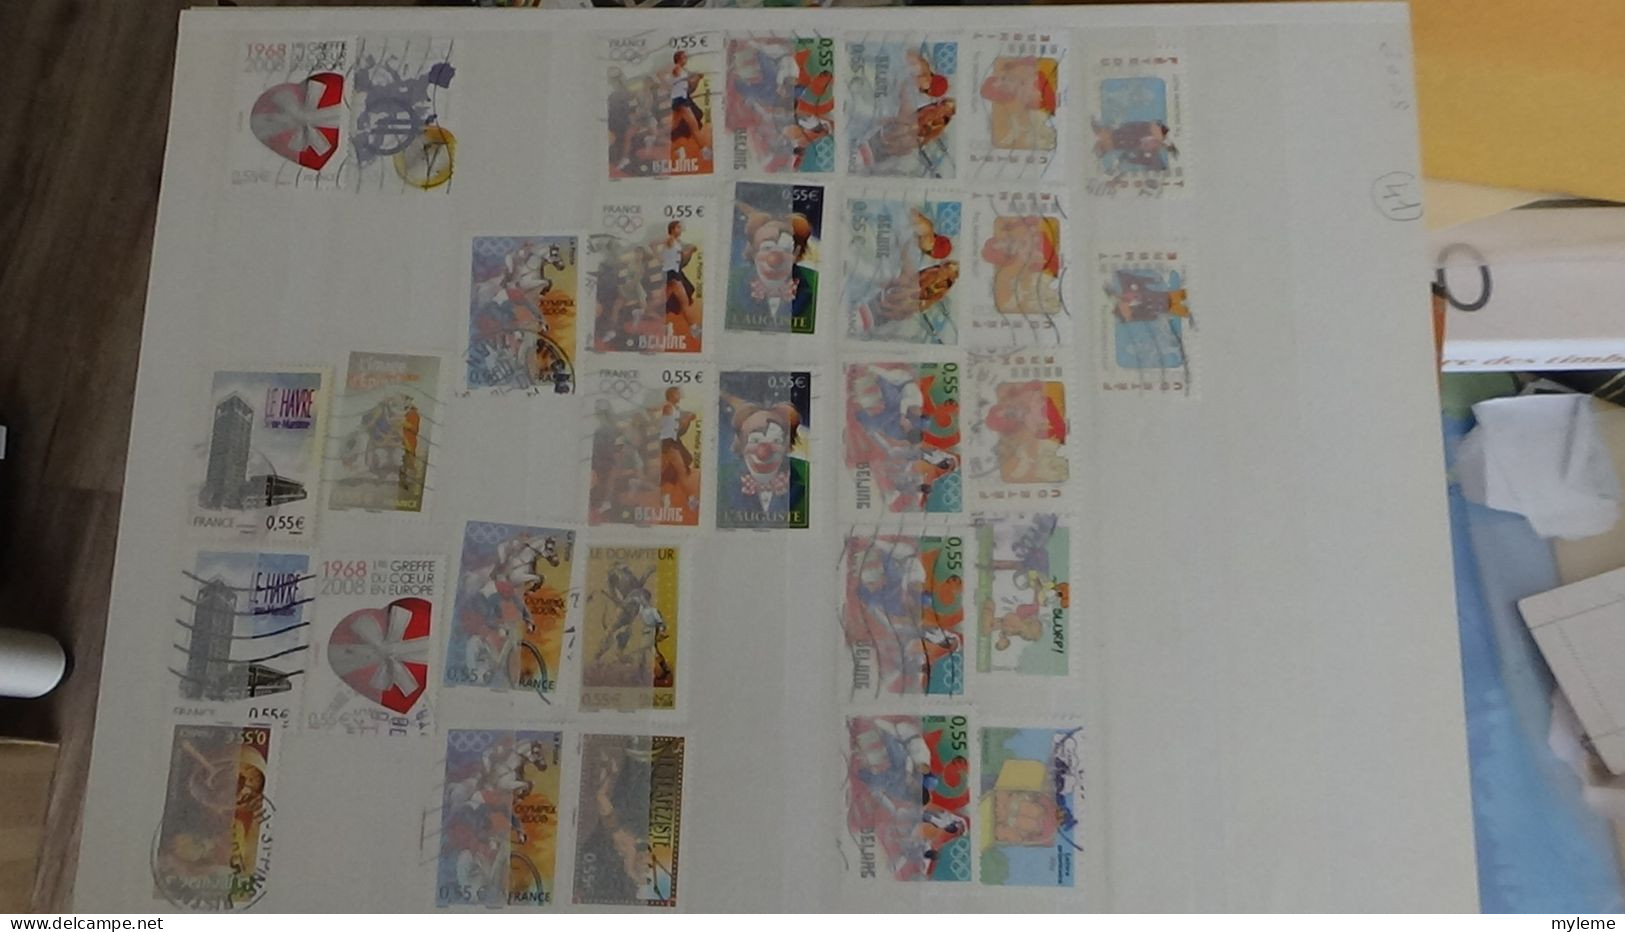 BJ38 Collection de timbres oblitérés de divers pays + France N° 3734i ** piquage à cheval en bloc de 4.  A saisir !!!